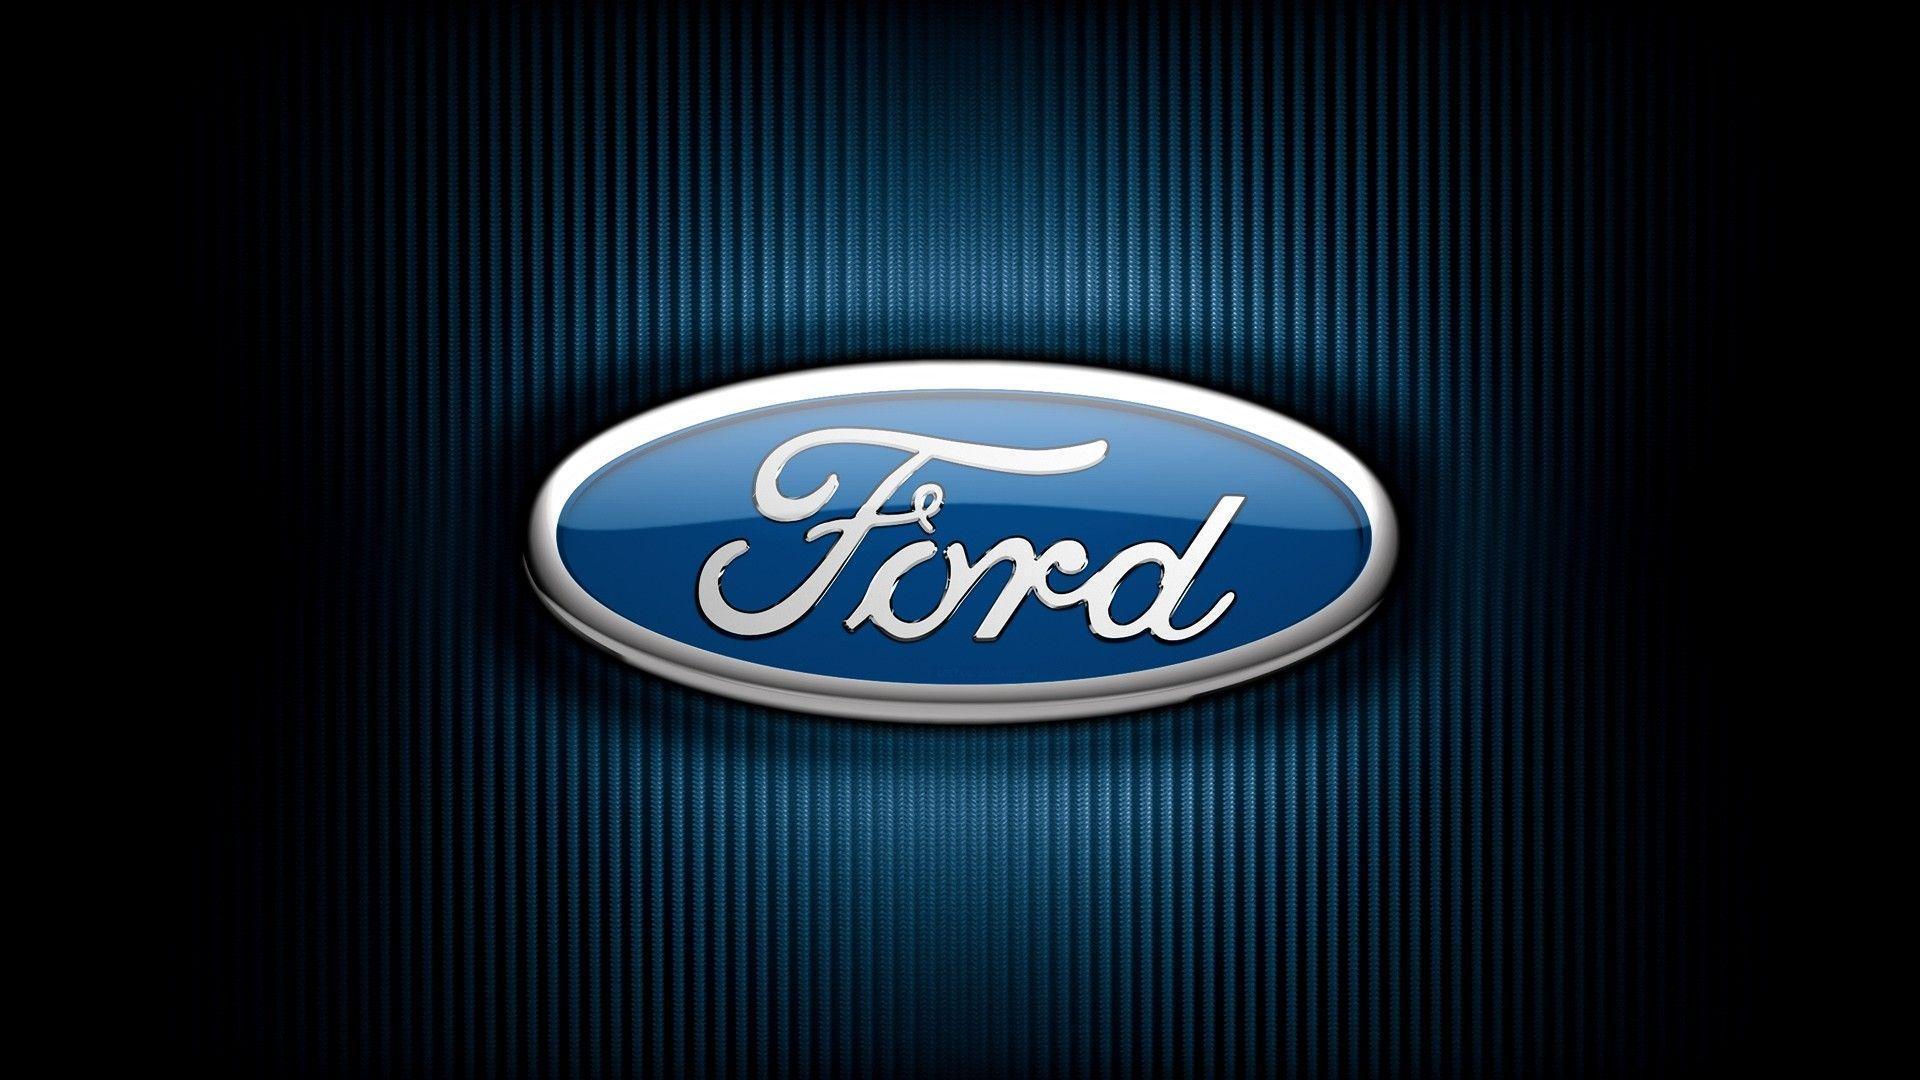 Ford Logos And Brand Wallpaper Wallpaper. Naviwall